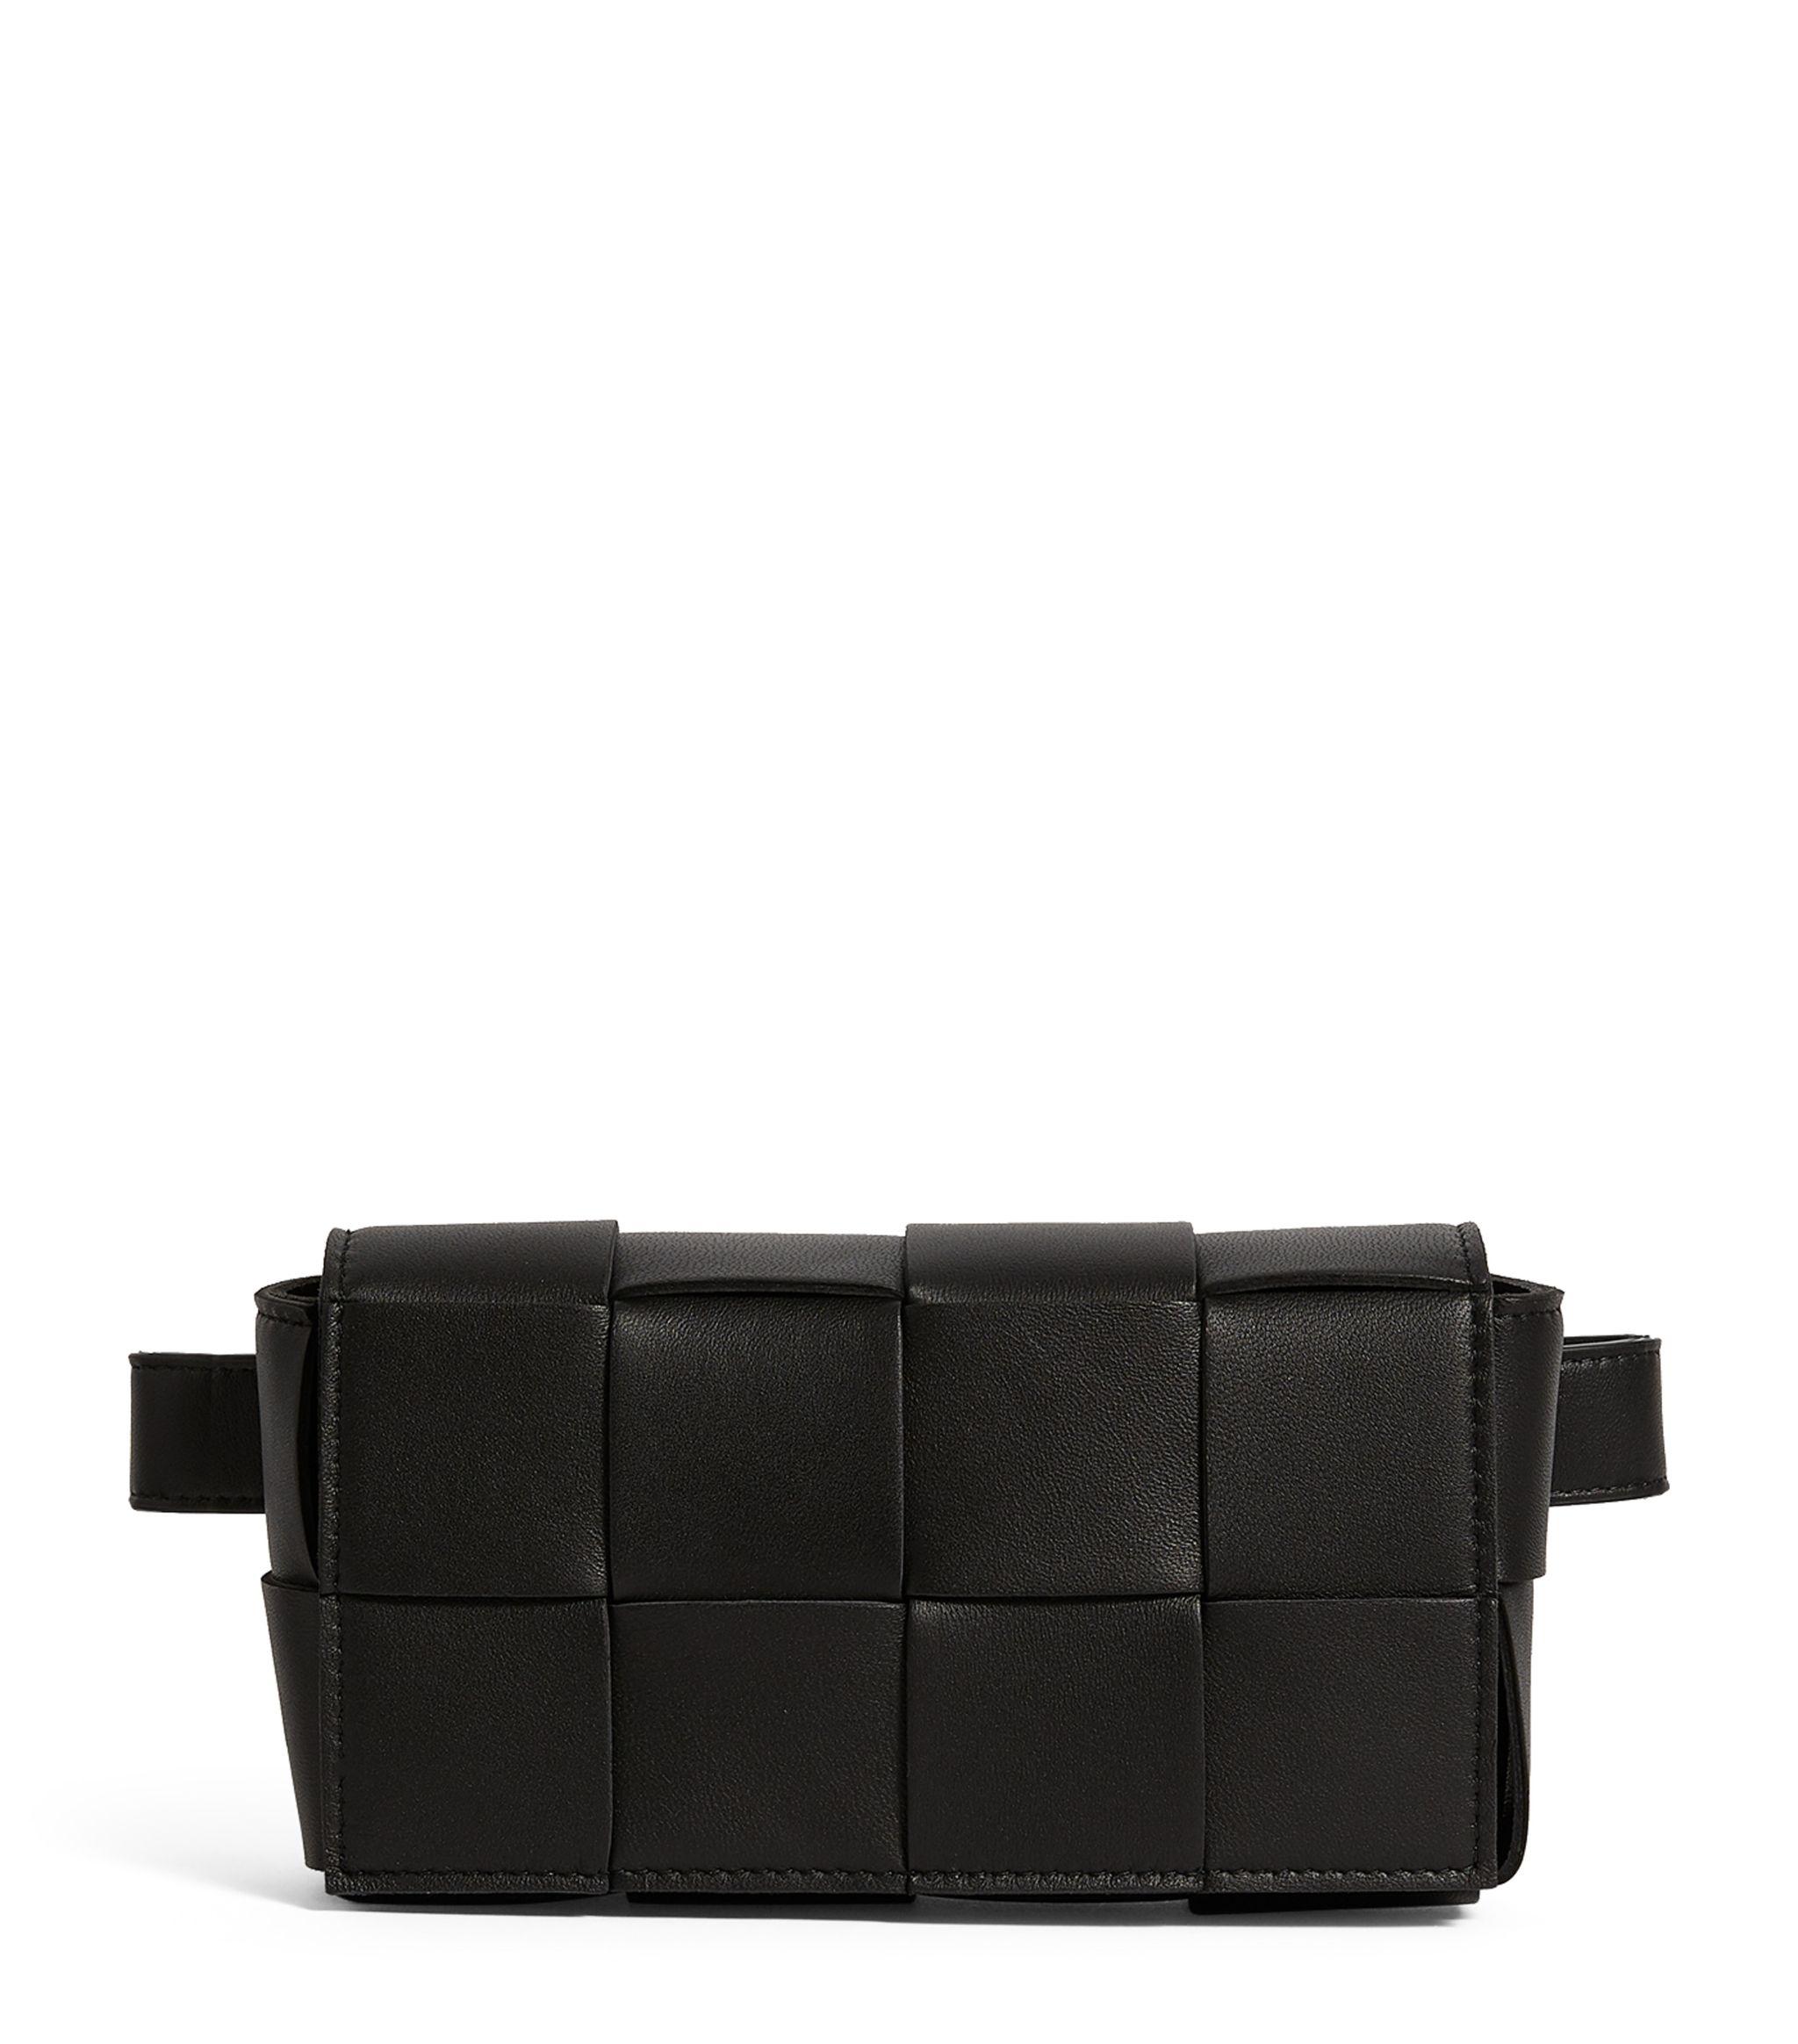 Bottega Veneta Leather Cassette Belt Bag in Black - Lyst